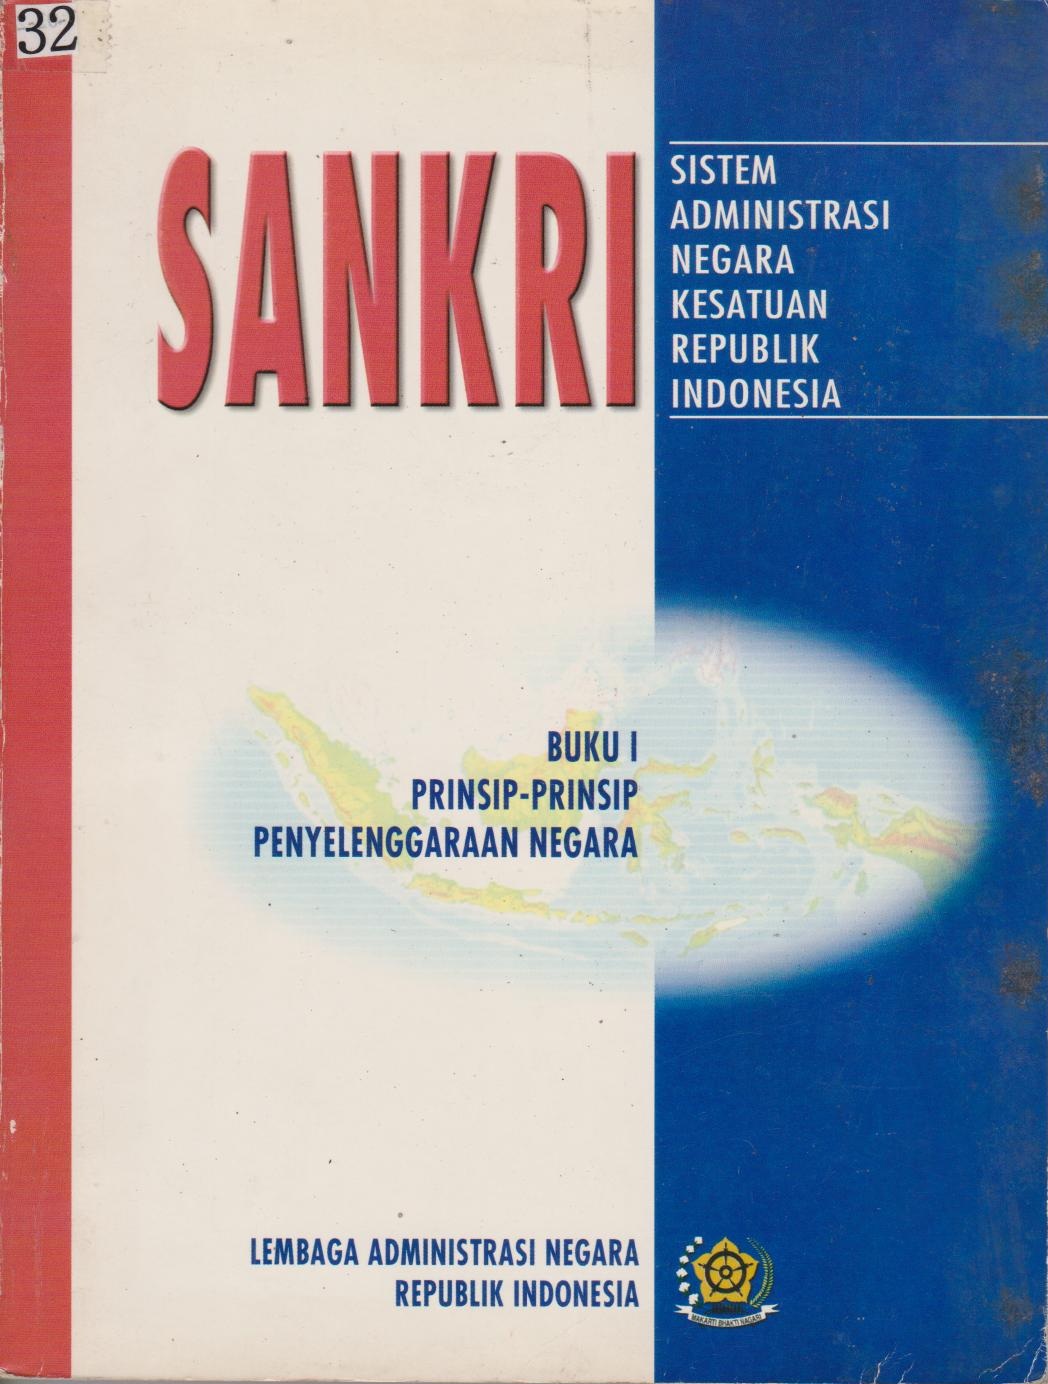 SANKRI : Sistem Administrasi Negara Kesatuan Republik Indonesia